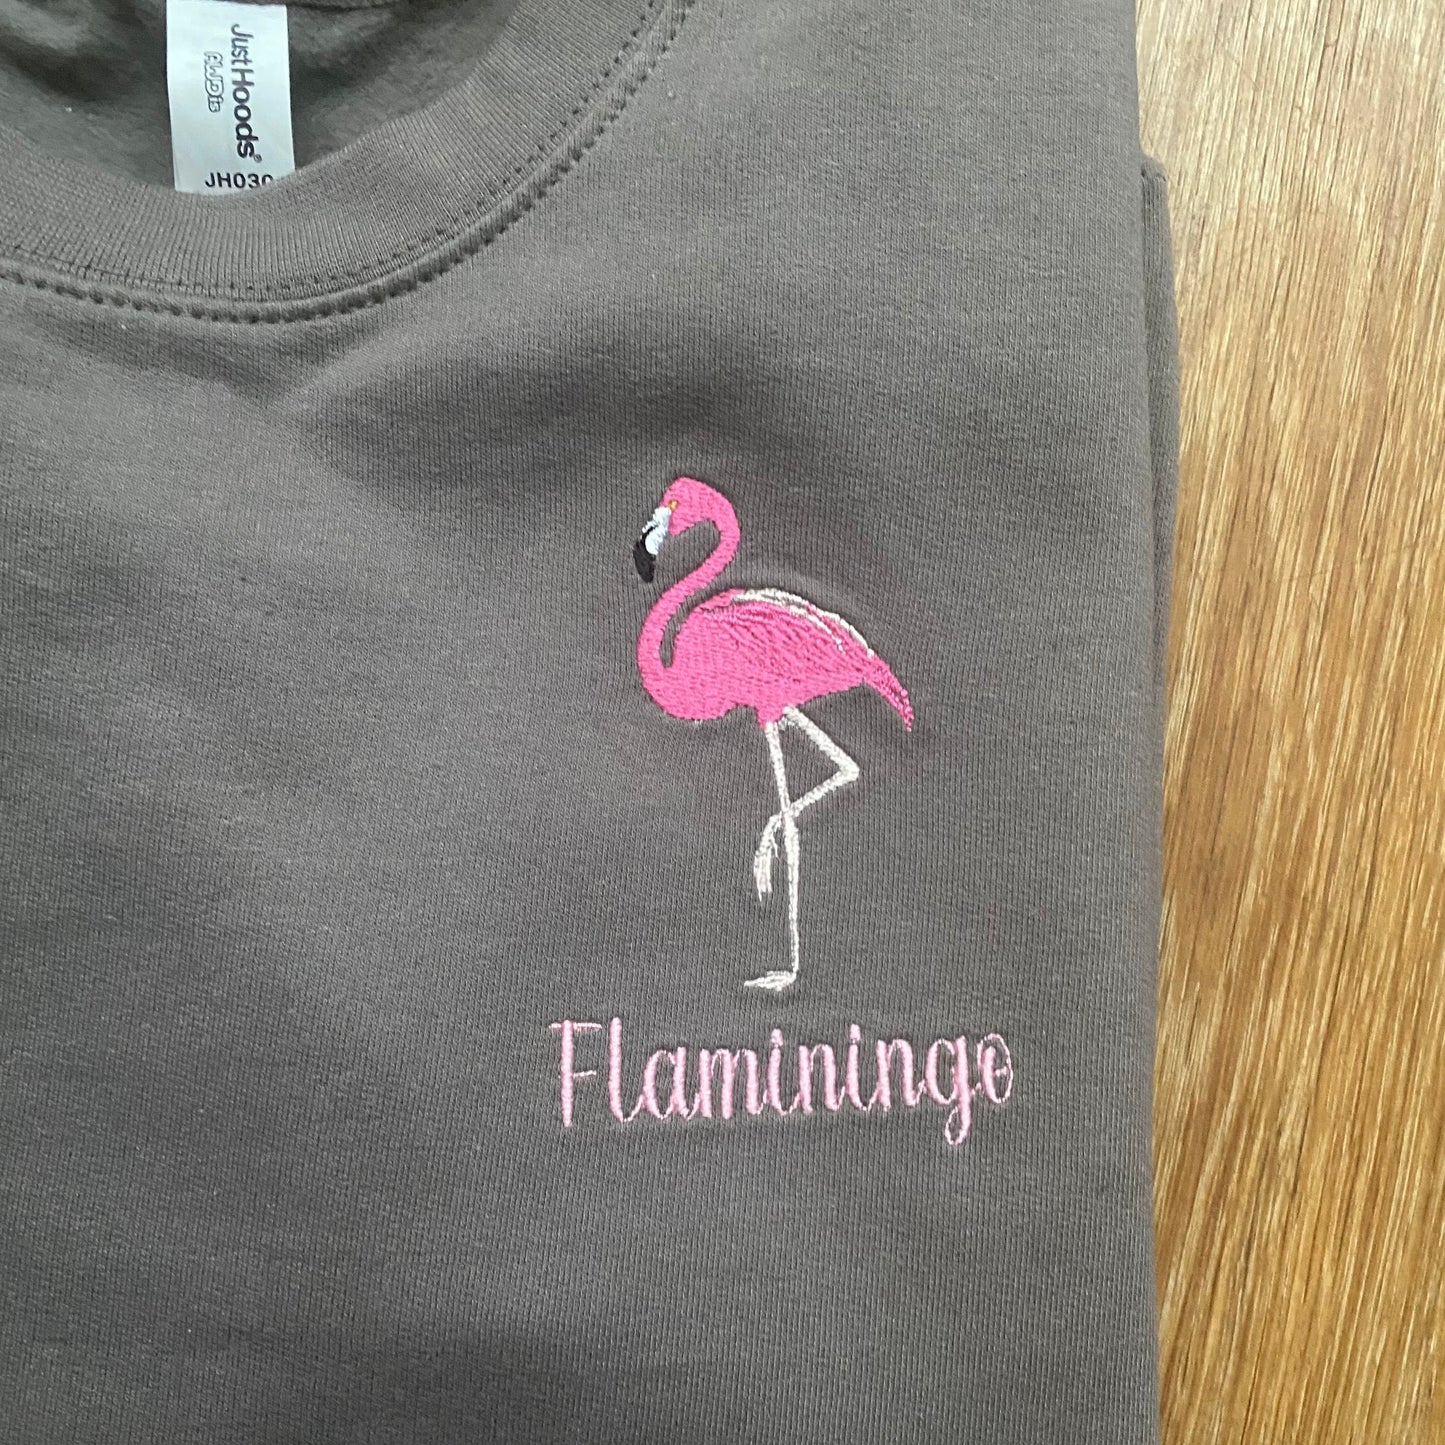 Flamingo Embroidered Unisex Adults Sweatshirt With Option of Additional Novelty "Flaminingo" Wording